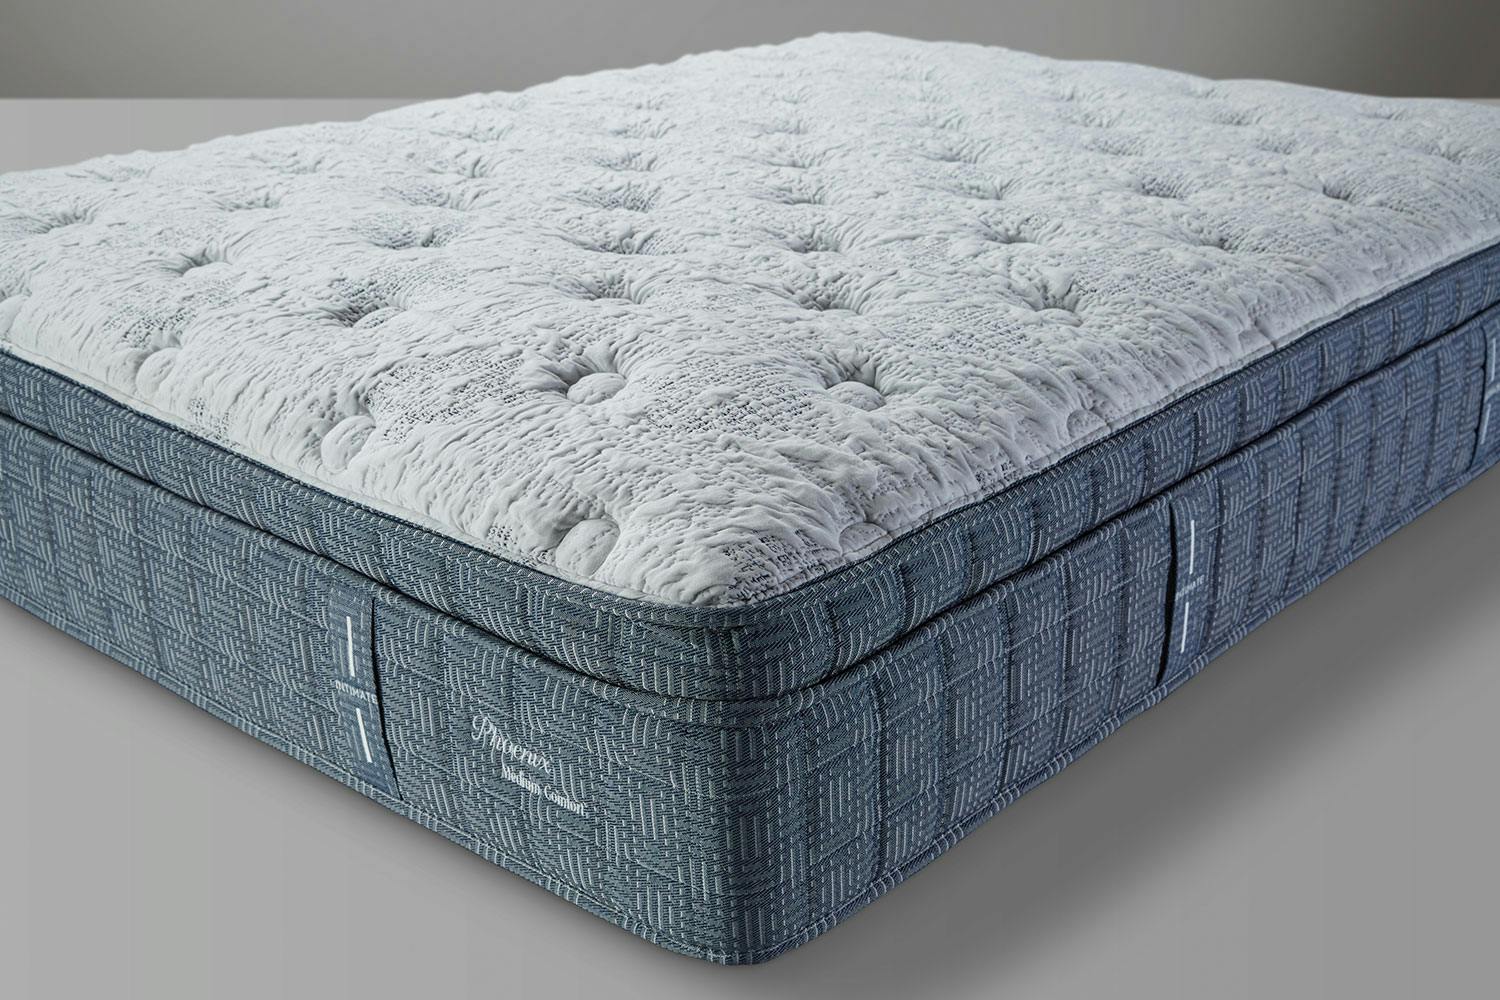 new queen mattress for sale cheap belgrade mt